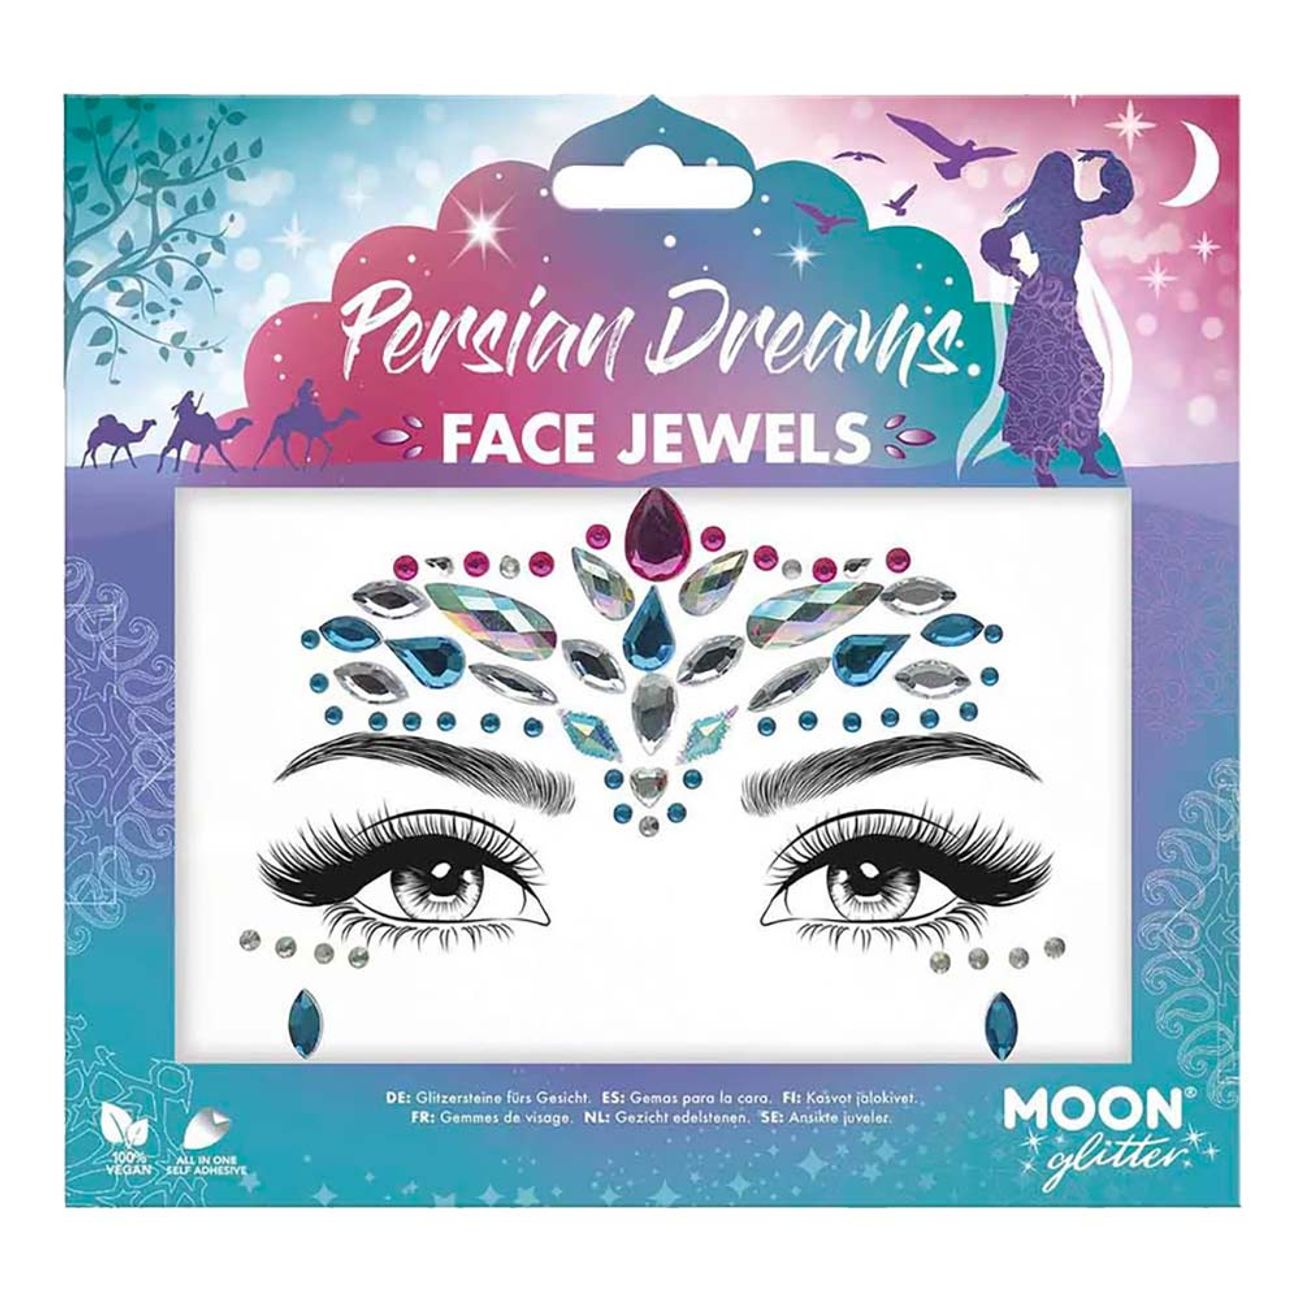 face-jewels-persian-dreams-96415-1